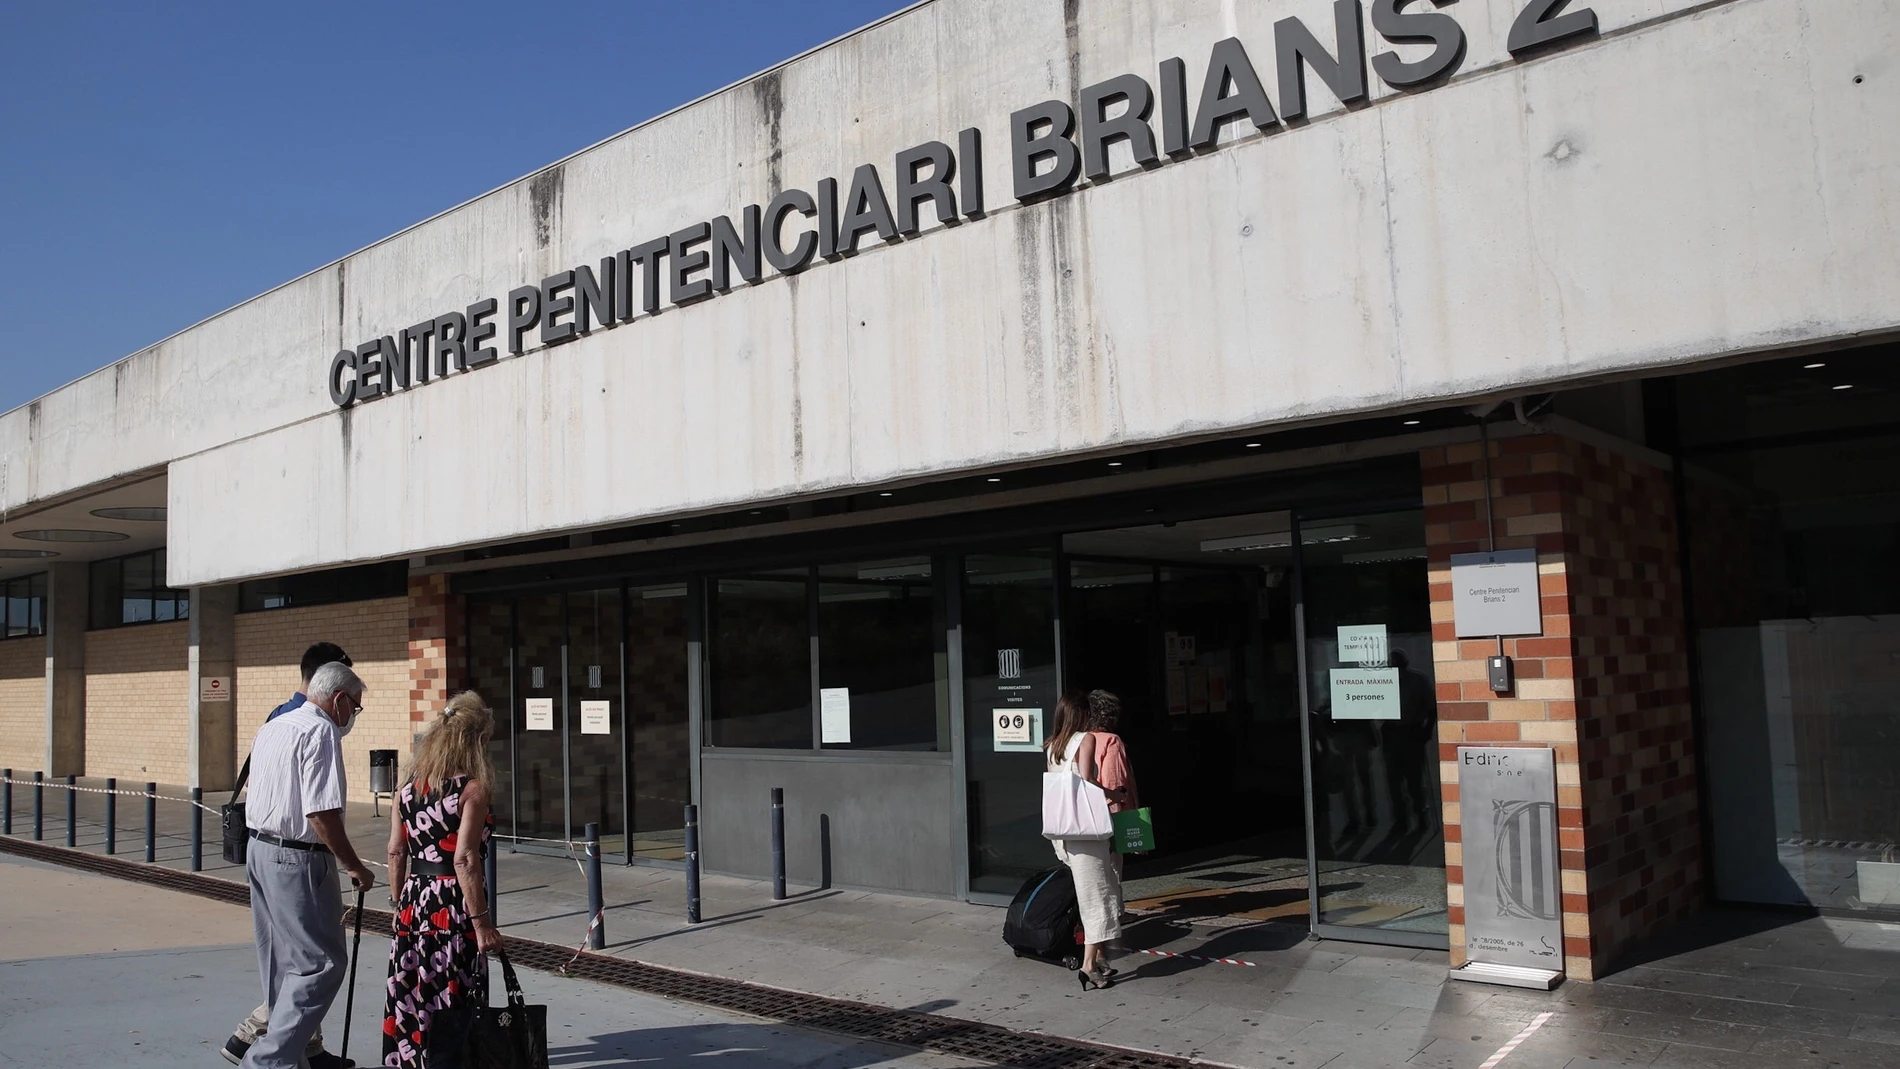 Confinada la cárcel Brians 2 en Barcelona tras declararse un brote de coronavirus